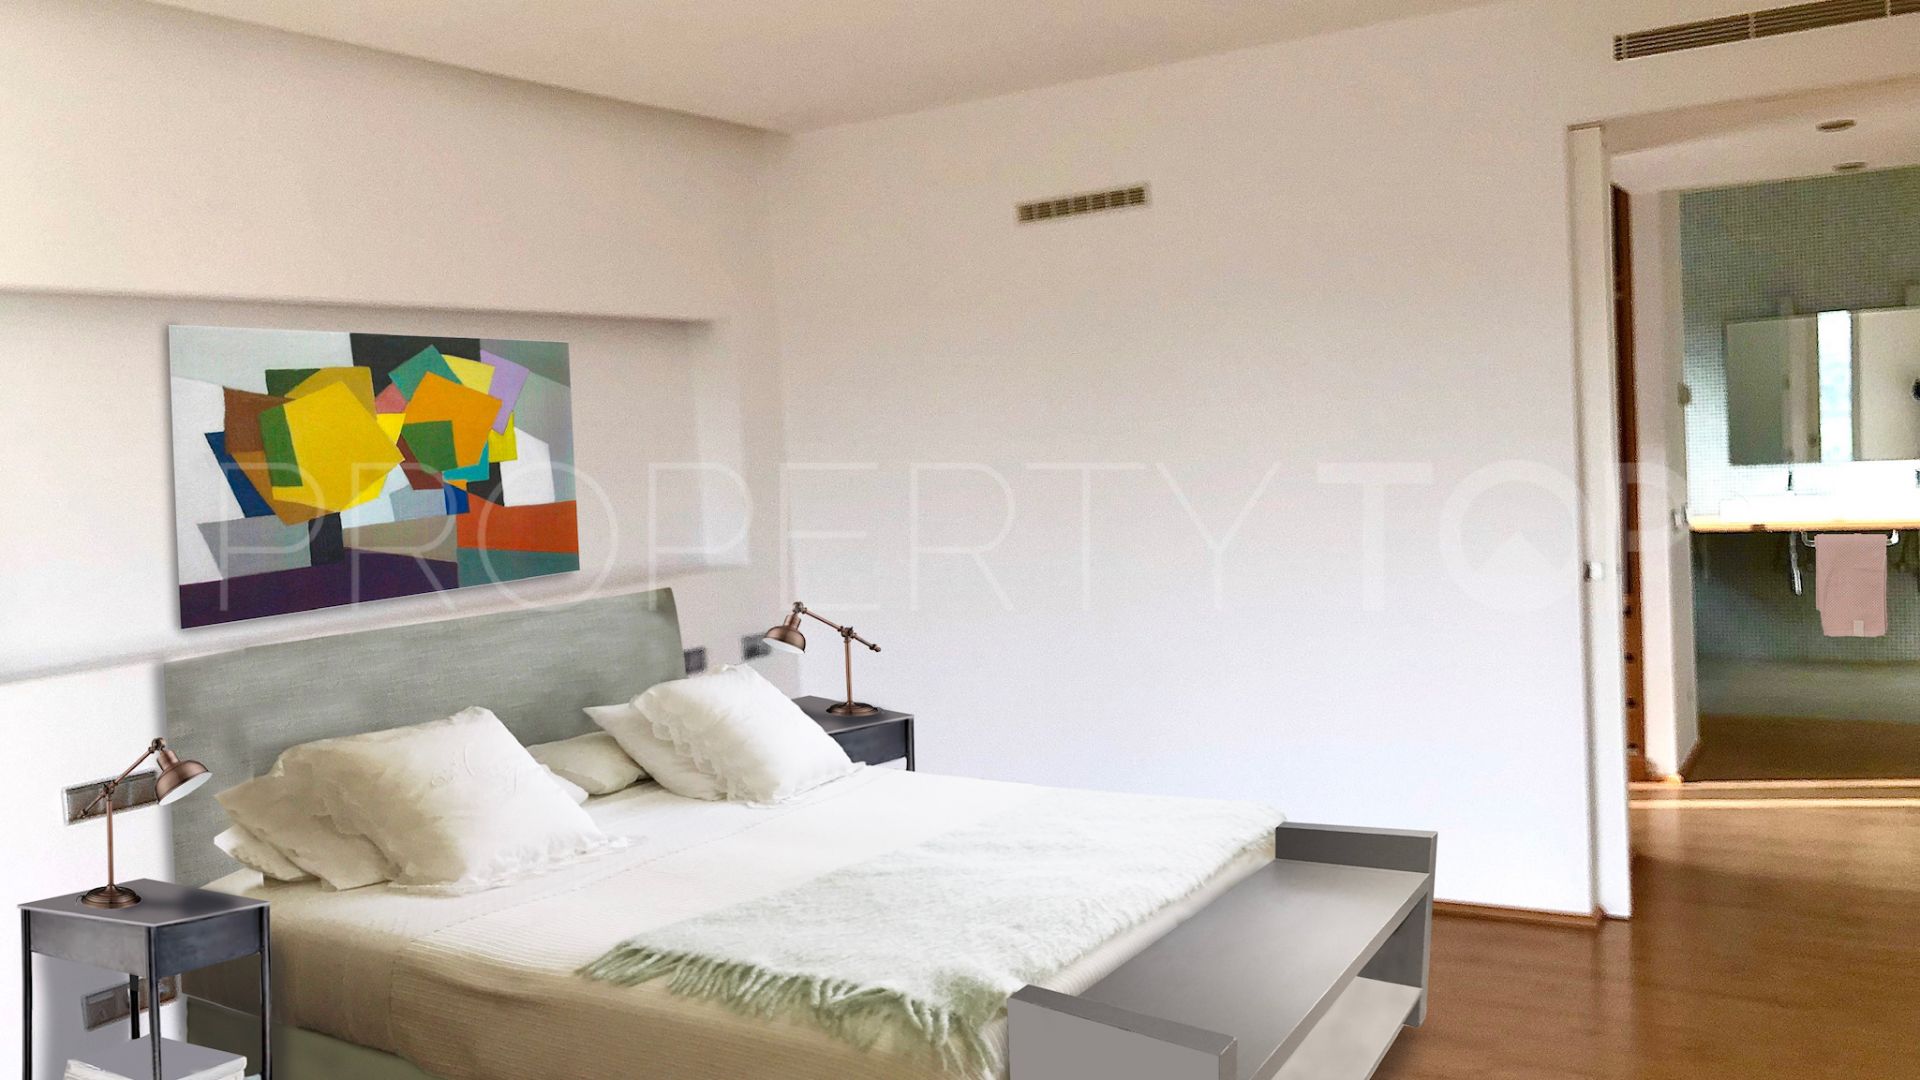 Buy 4 bedrooms villa in Sotogrande Alto